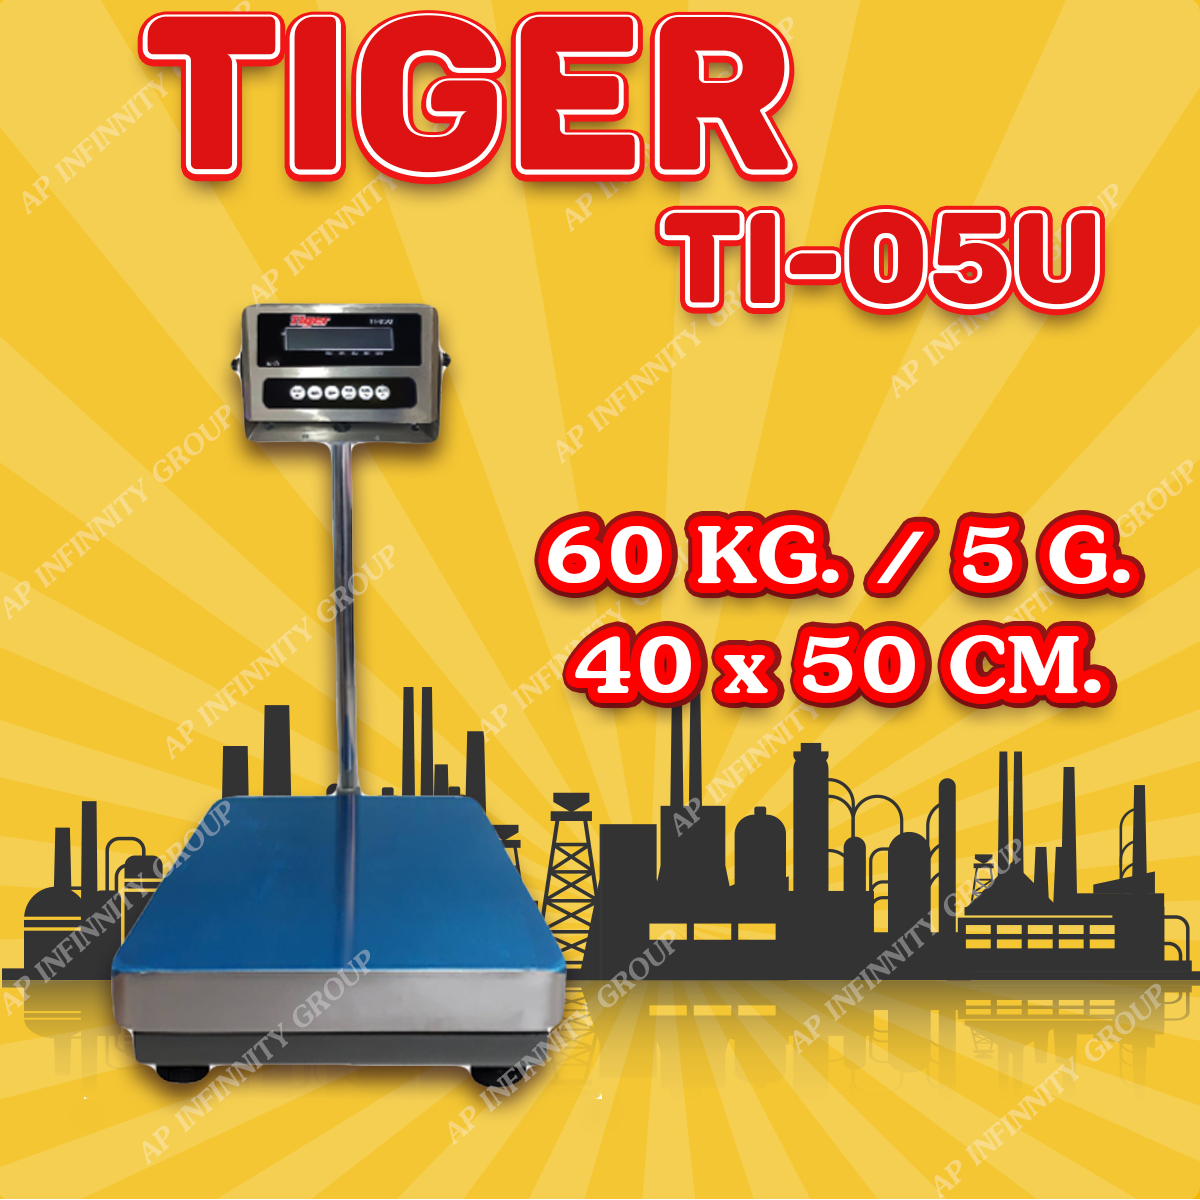 ตาชั่งดิจิตอล เครื่องชั่งดิจิตอล เครื่องชั่งตั้งพื้น 60kg ความละเอียด 5g ยี่ห้อ Tiger รุ่น TI–05U แท่นชั่งขนาดฐาน 40x 50cm มีช่อง USB สำหรับการบันทึกข้อมูลได้ รูปที่ 1